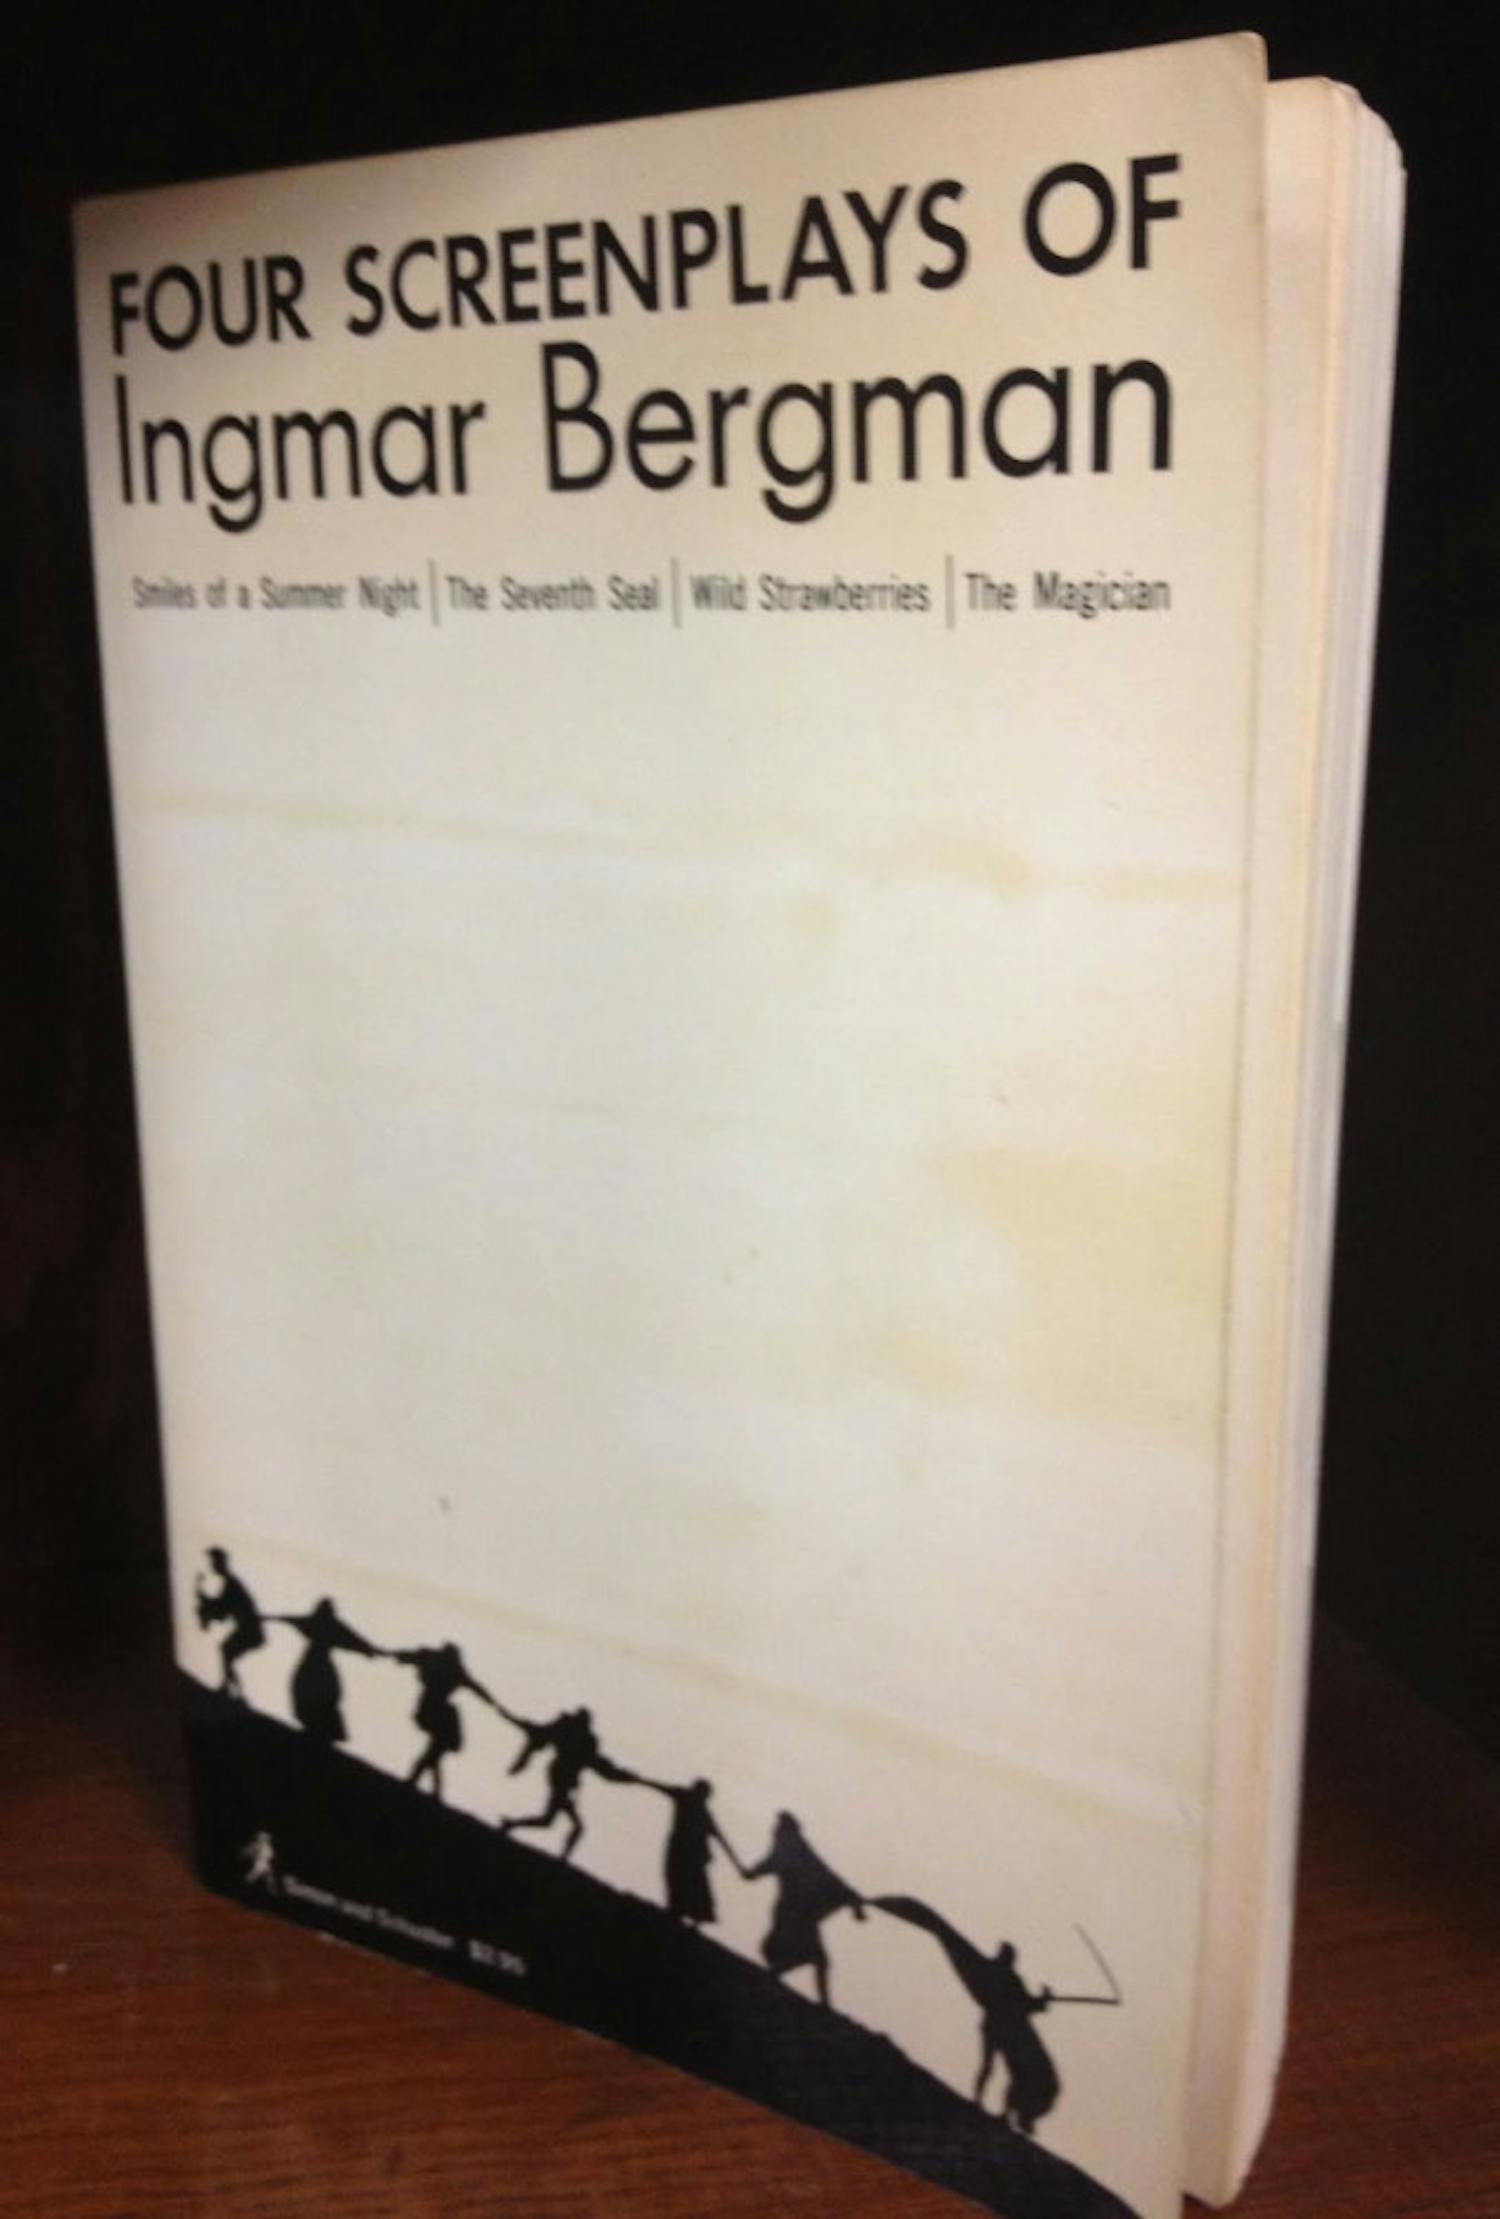 Four Screenplays of Ingmar Bergman
$3